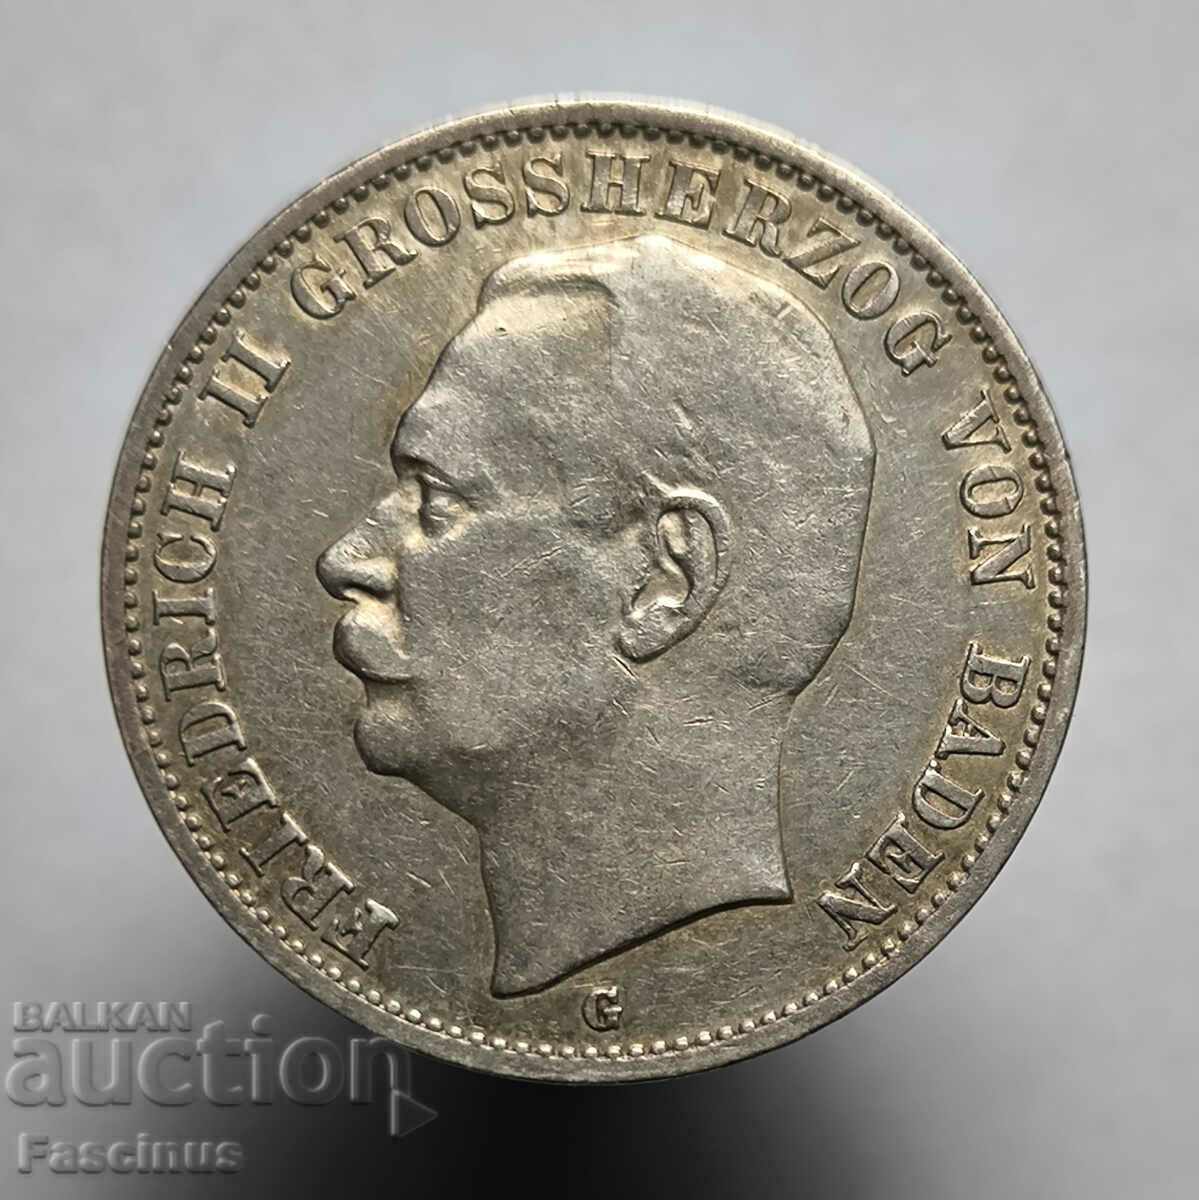 Сребърна монета 3 марки 1911 Баден Германия